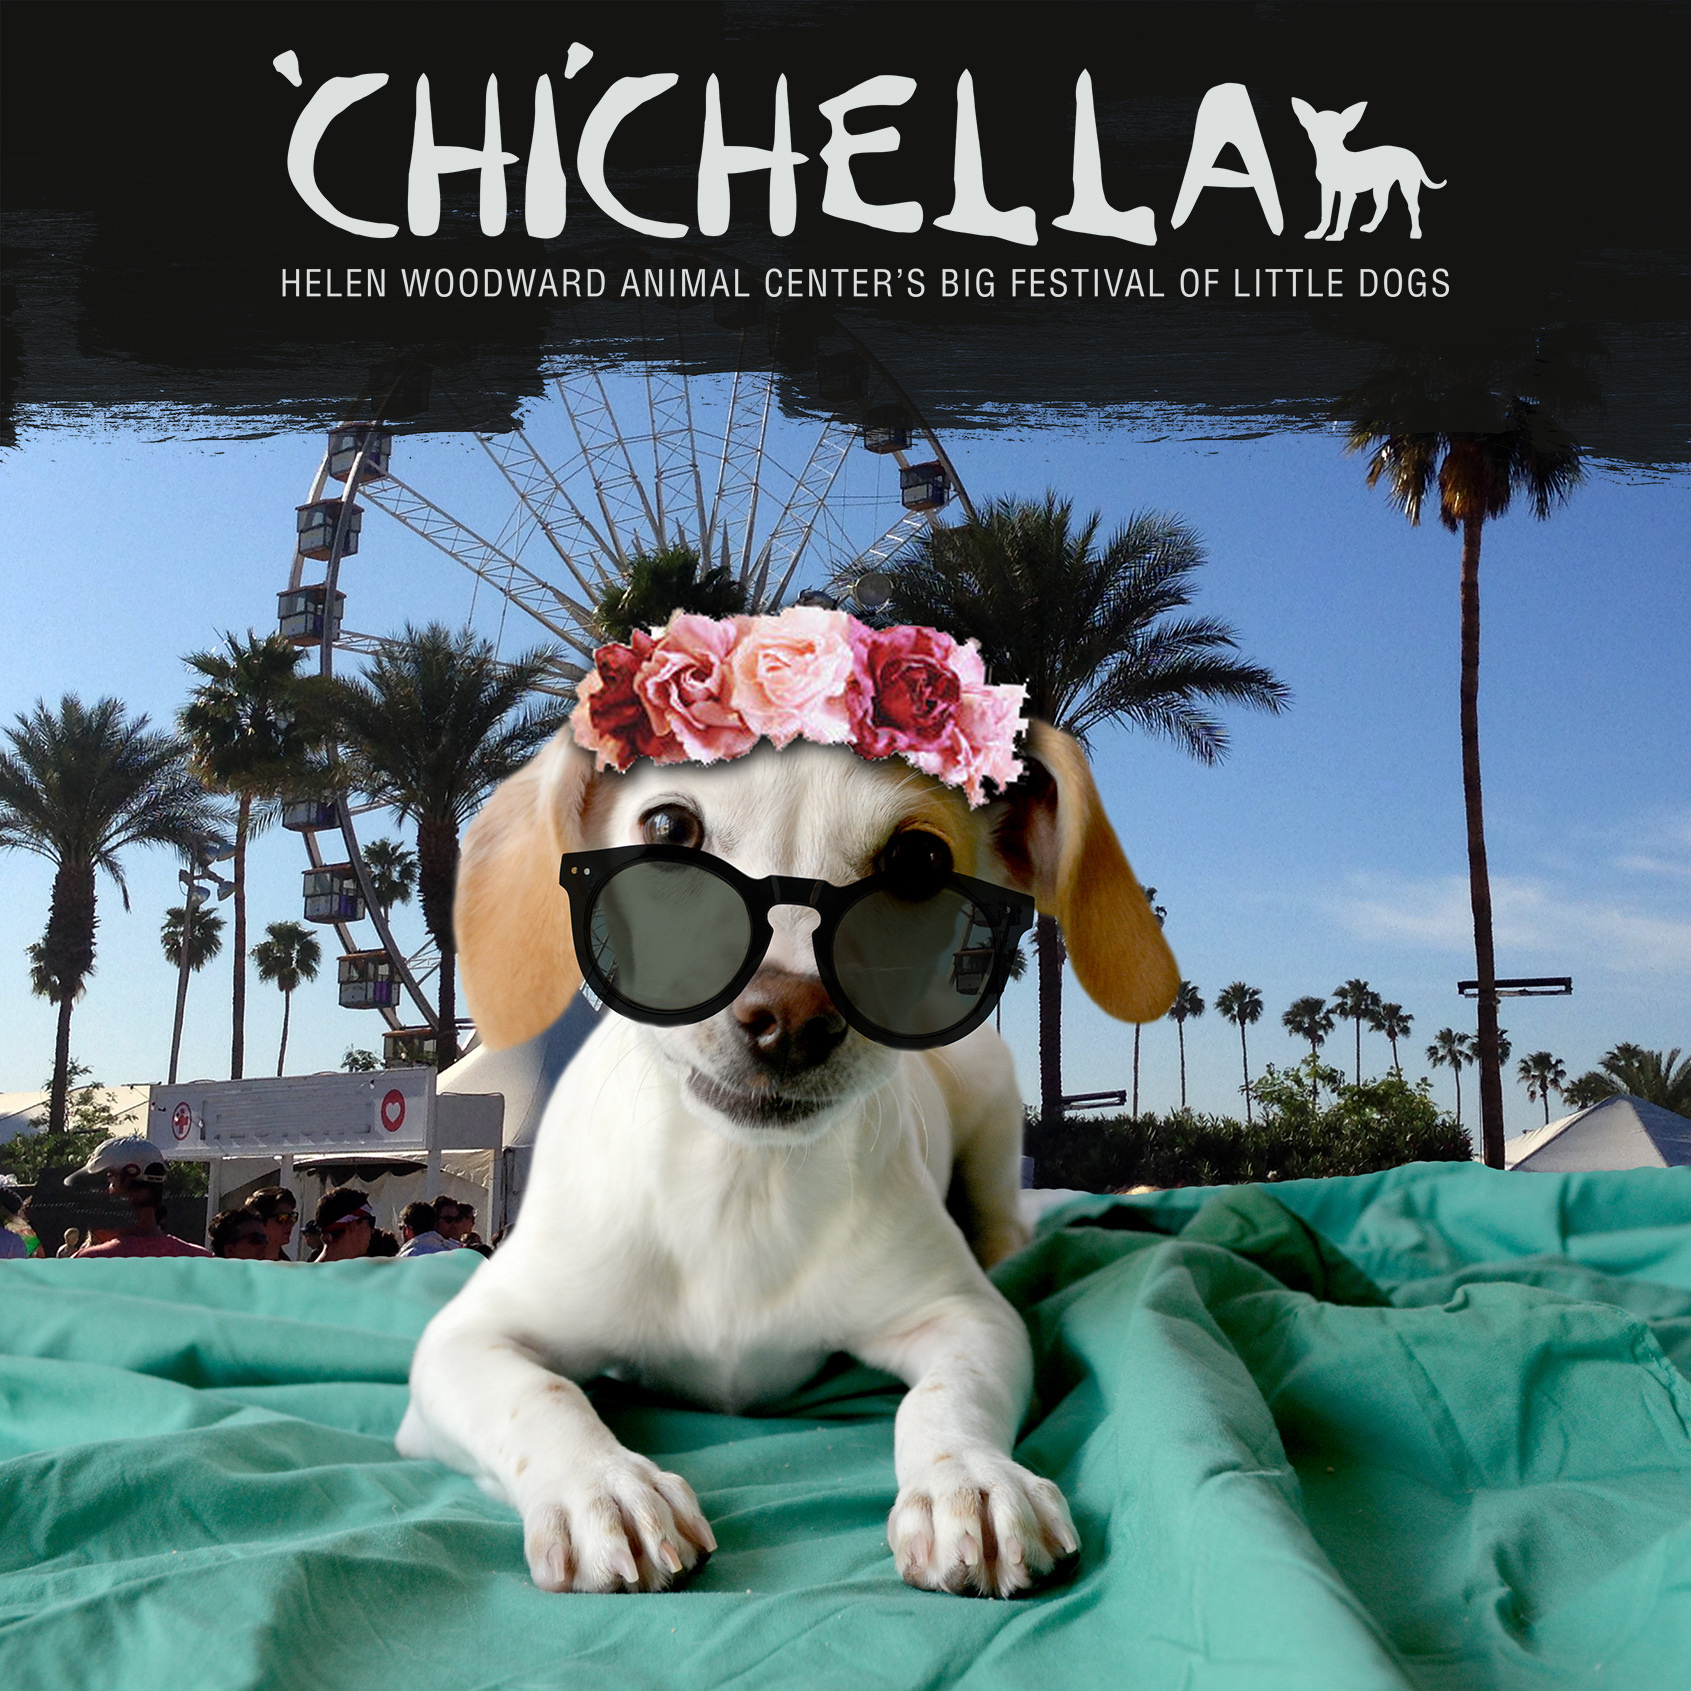 Chichella, Helen Woodward Animal Center, Coachella